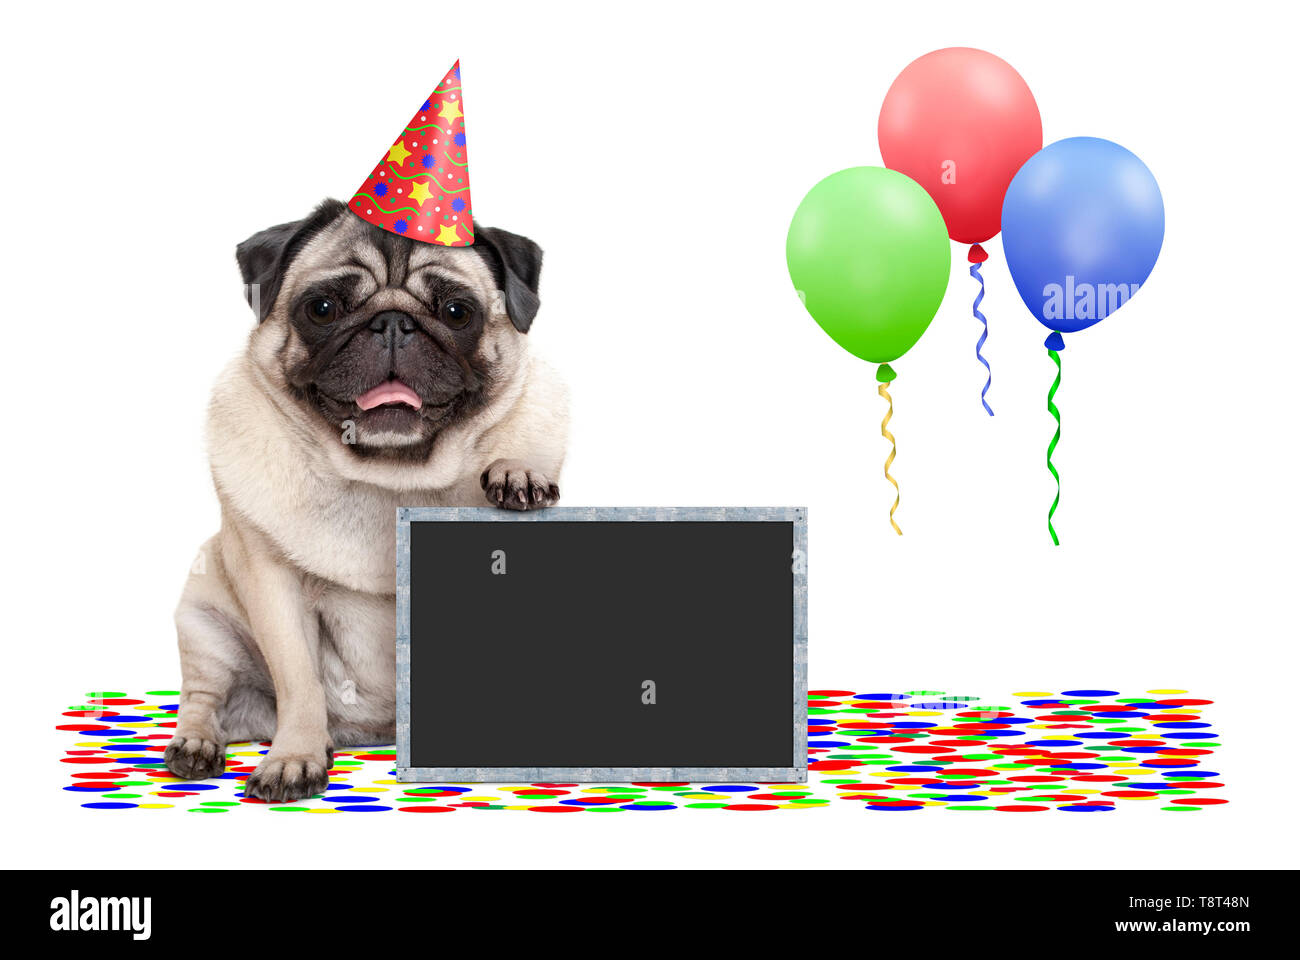 Frolic sorridente festa di compleanno pug dog con Blackboard, coriandoli e palloncini decorazione, isolati su sfondo bianco Foto Stock